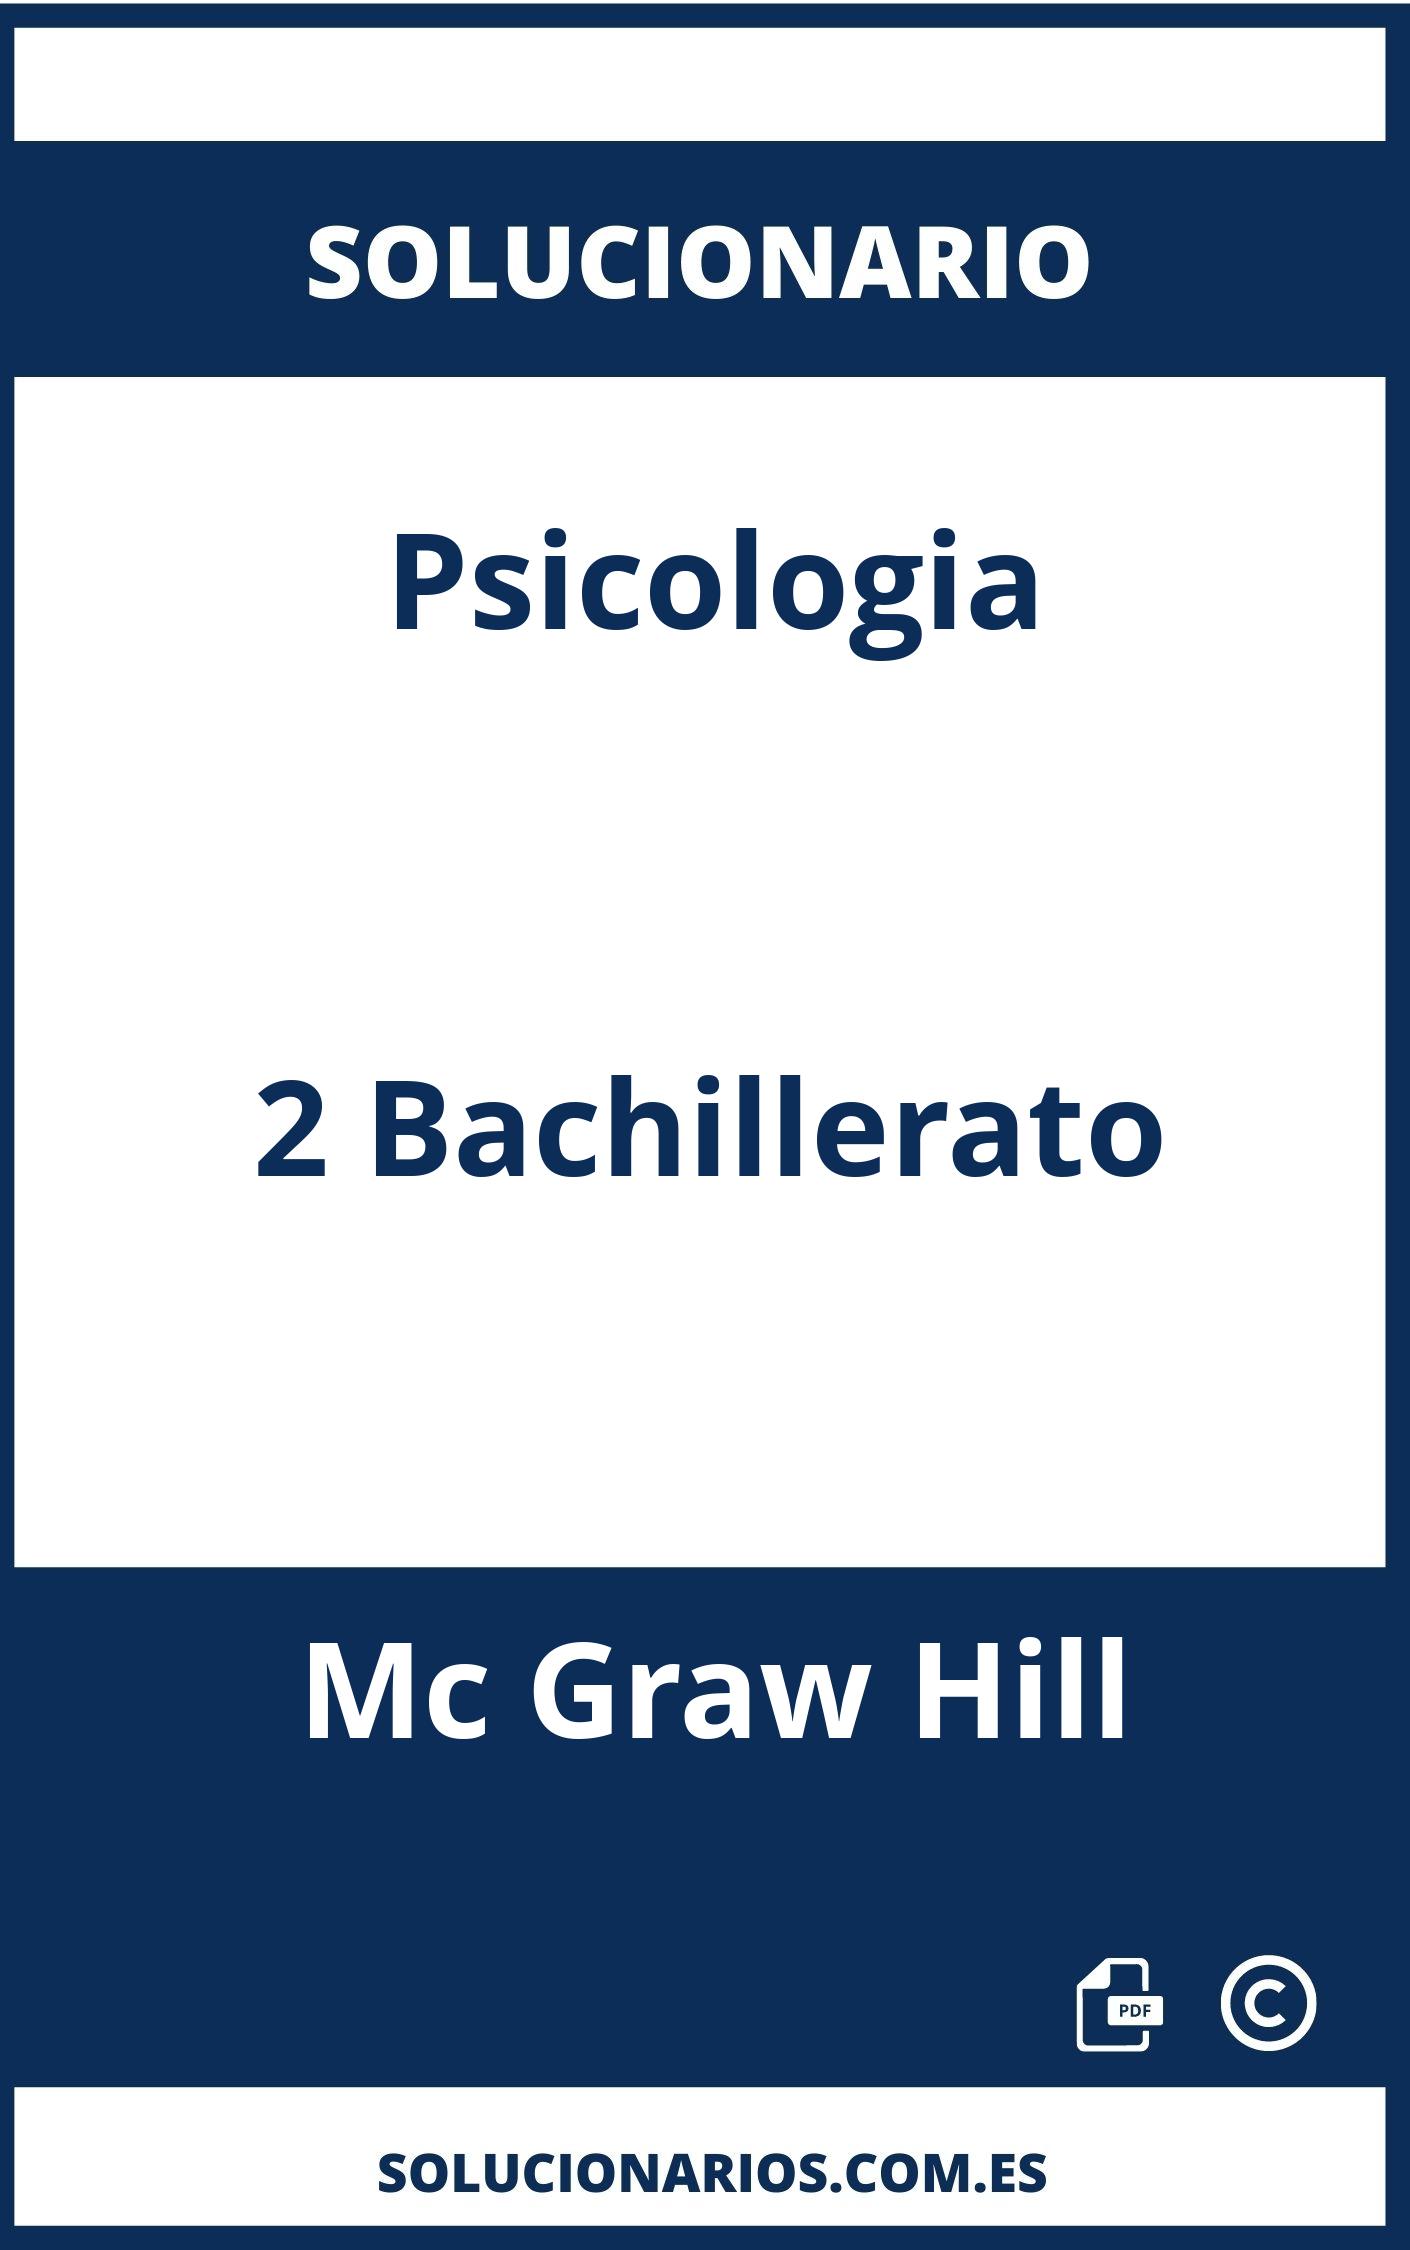 Solucionario Psicologia 2 Bachillerato Mc Graw Hill